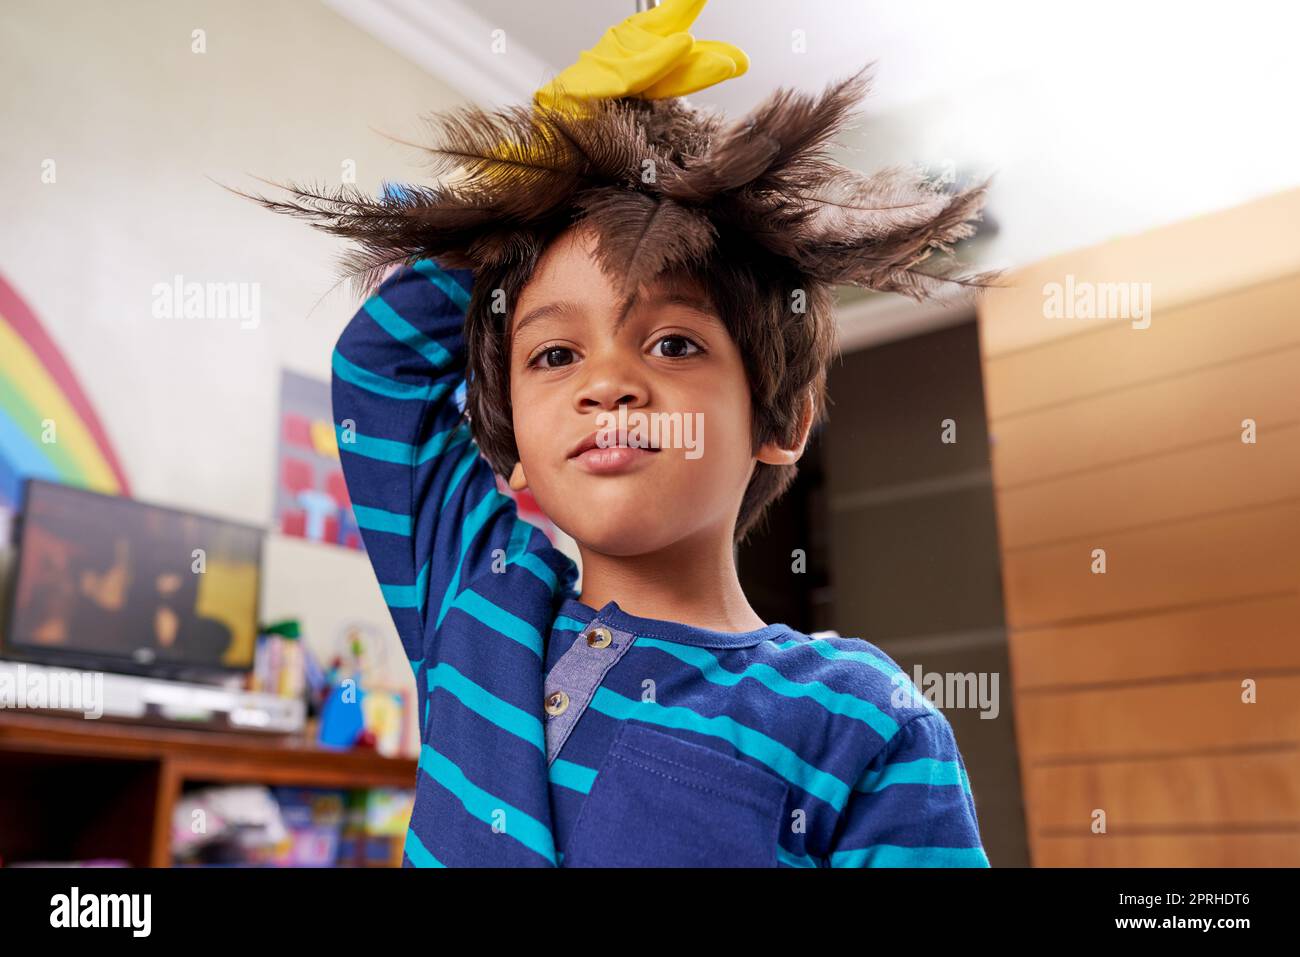 Aufgaben können auch Spaß machen. Porträt eines Jungen, der einen Federstaub auf seinem Kopf hält. Stockfoto